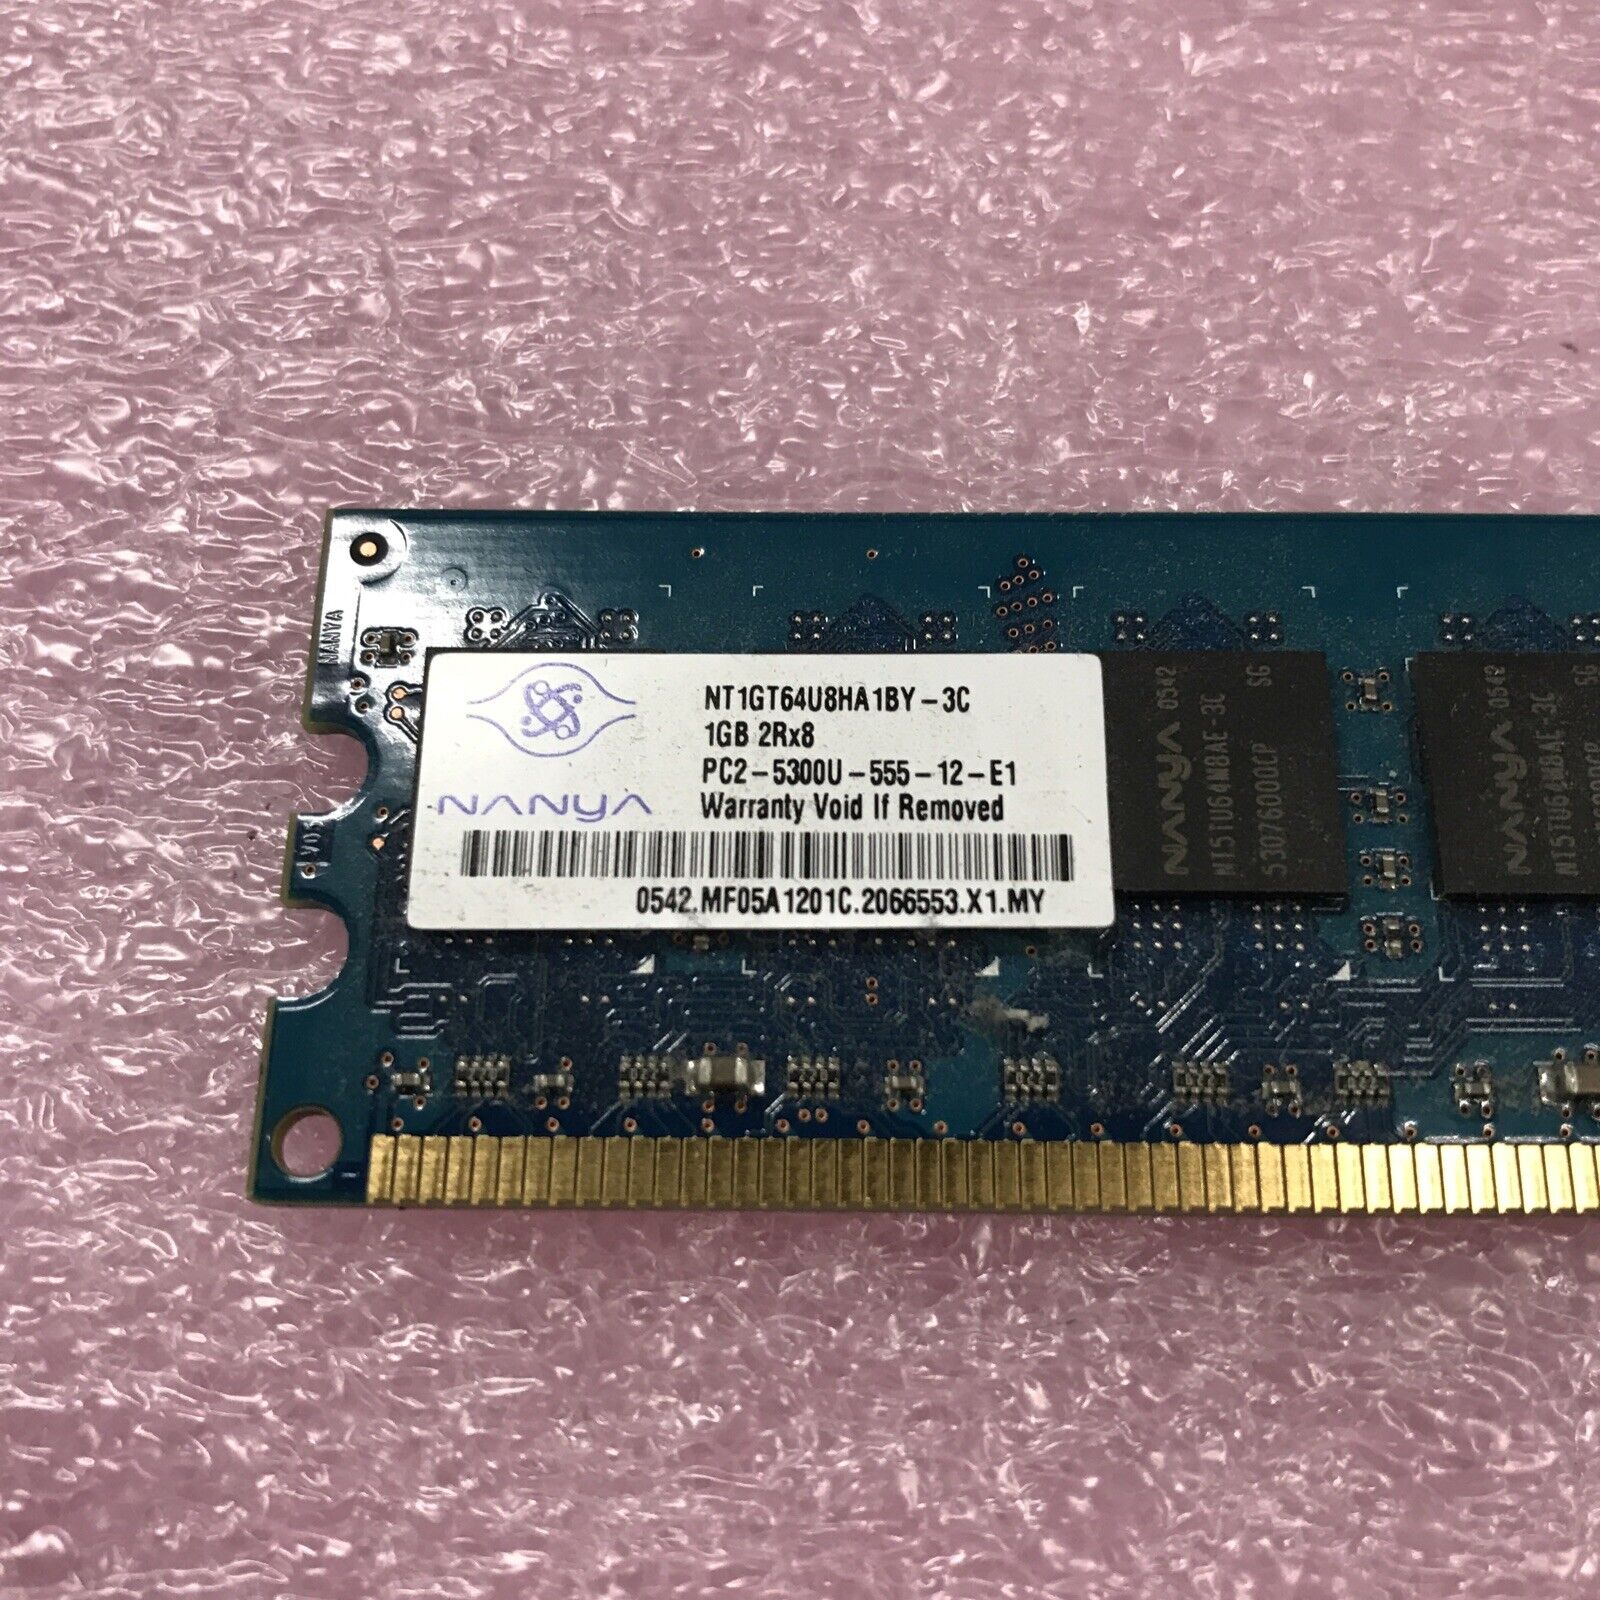 Nanya 2GB Kit 2x1GB PC2-5300U-555-12-E1 Ram NT1GT64U8HA1BY-3C